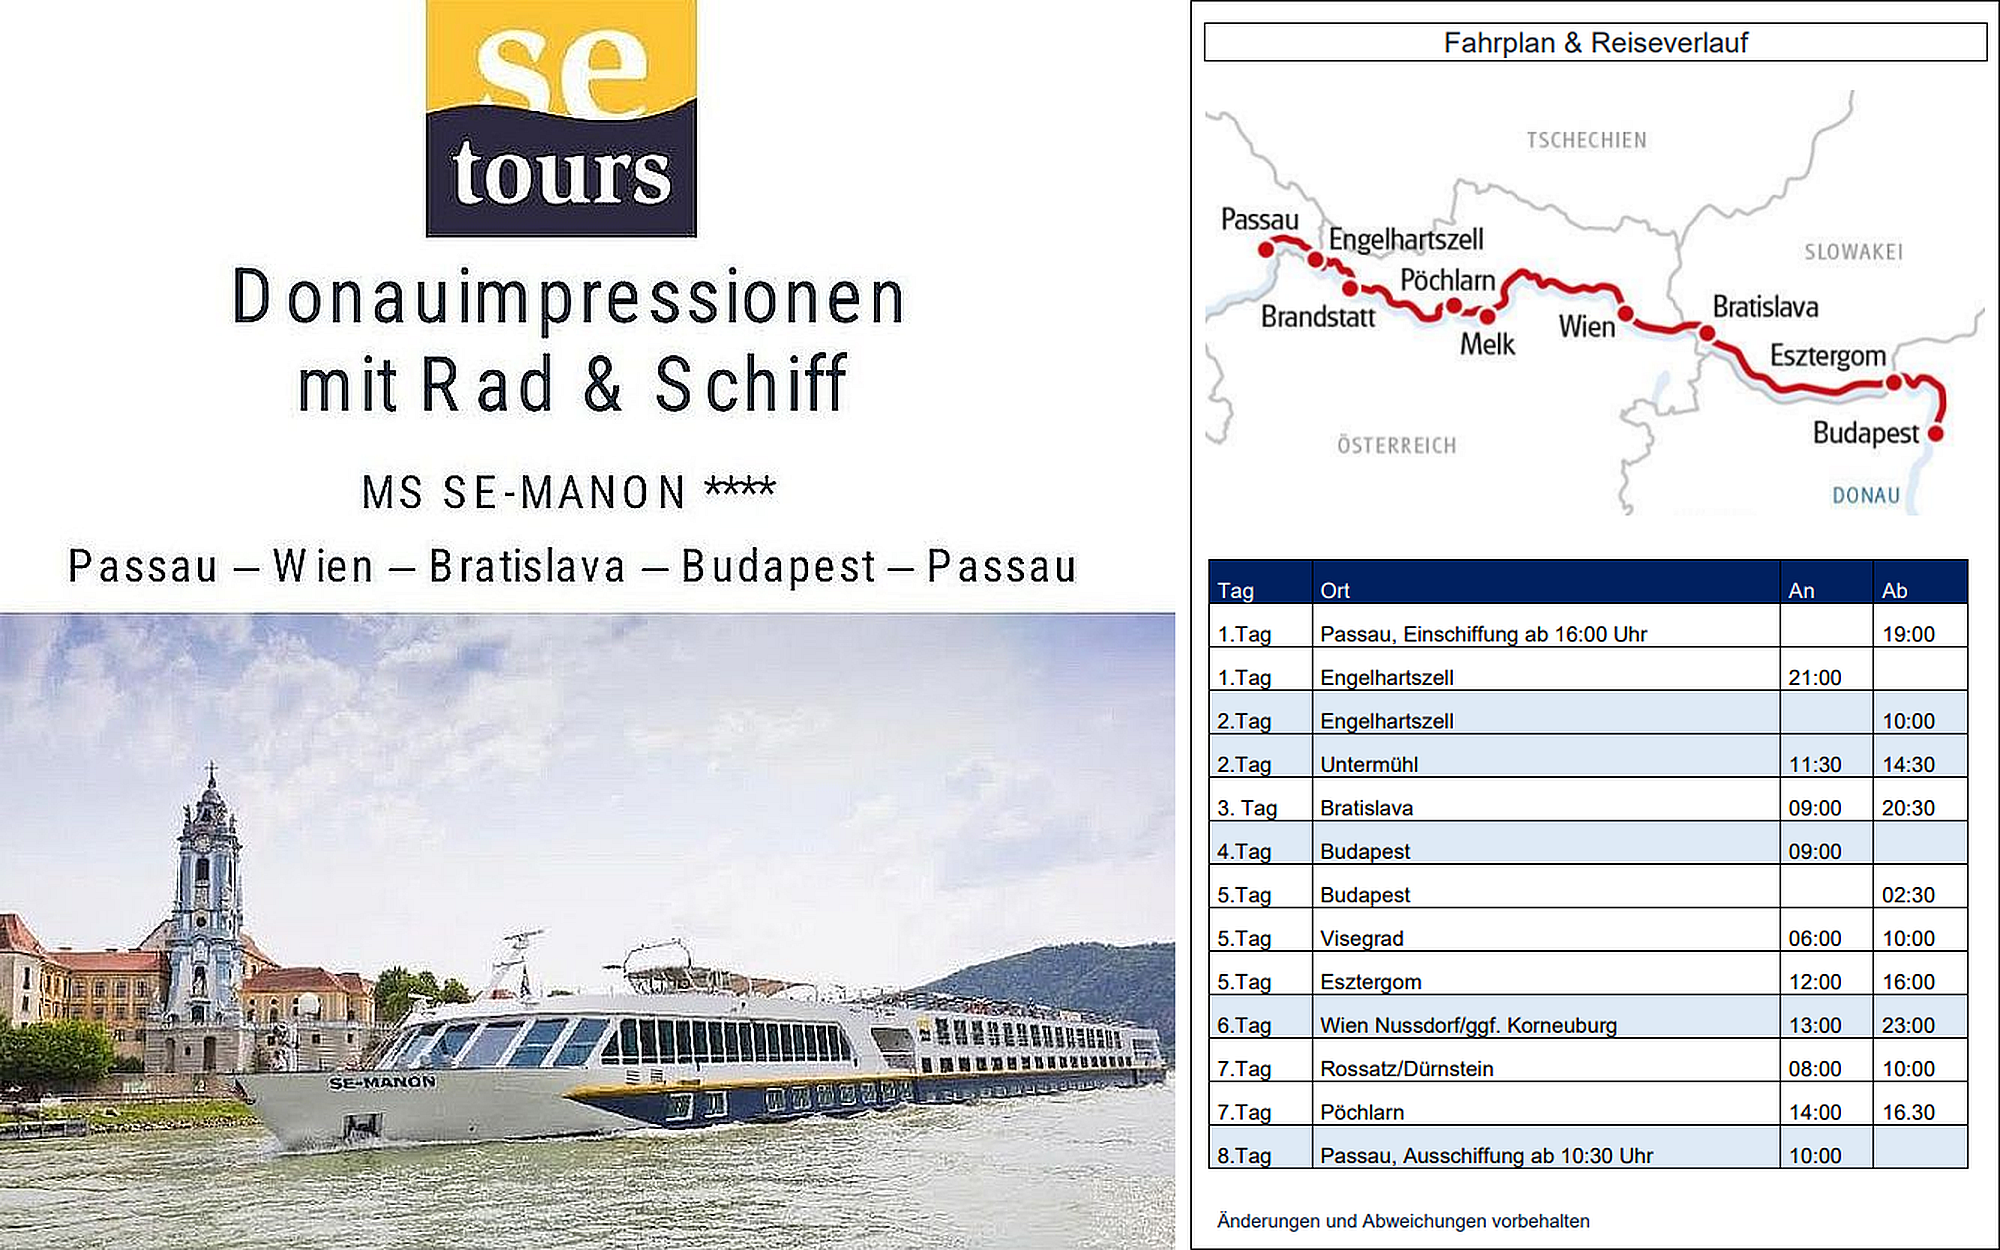 Donauimpressionen mit Rad und Schiff Fahrplan und Reiseverlauf